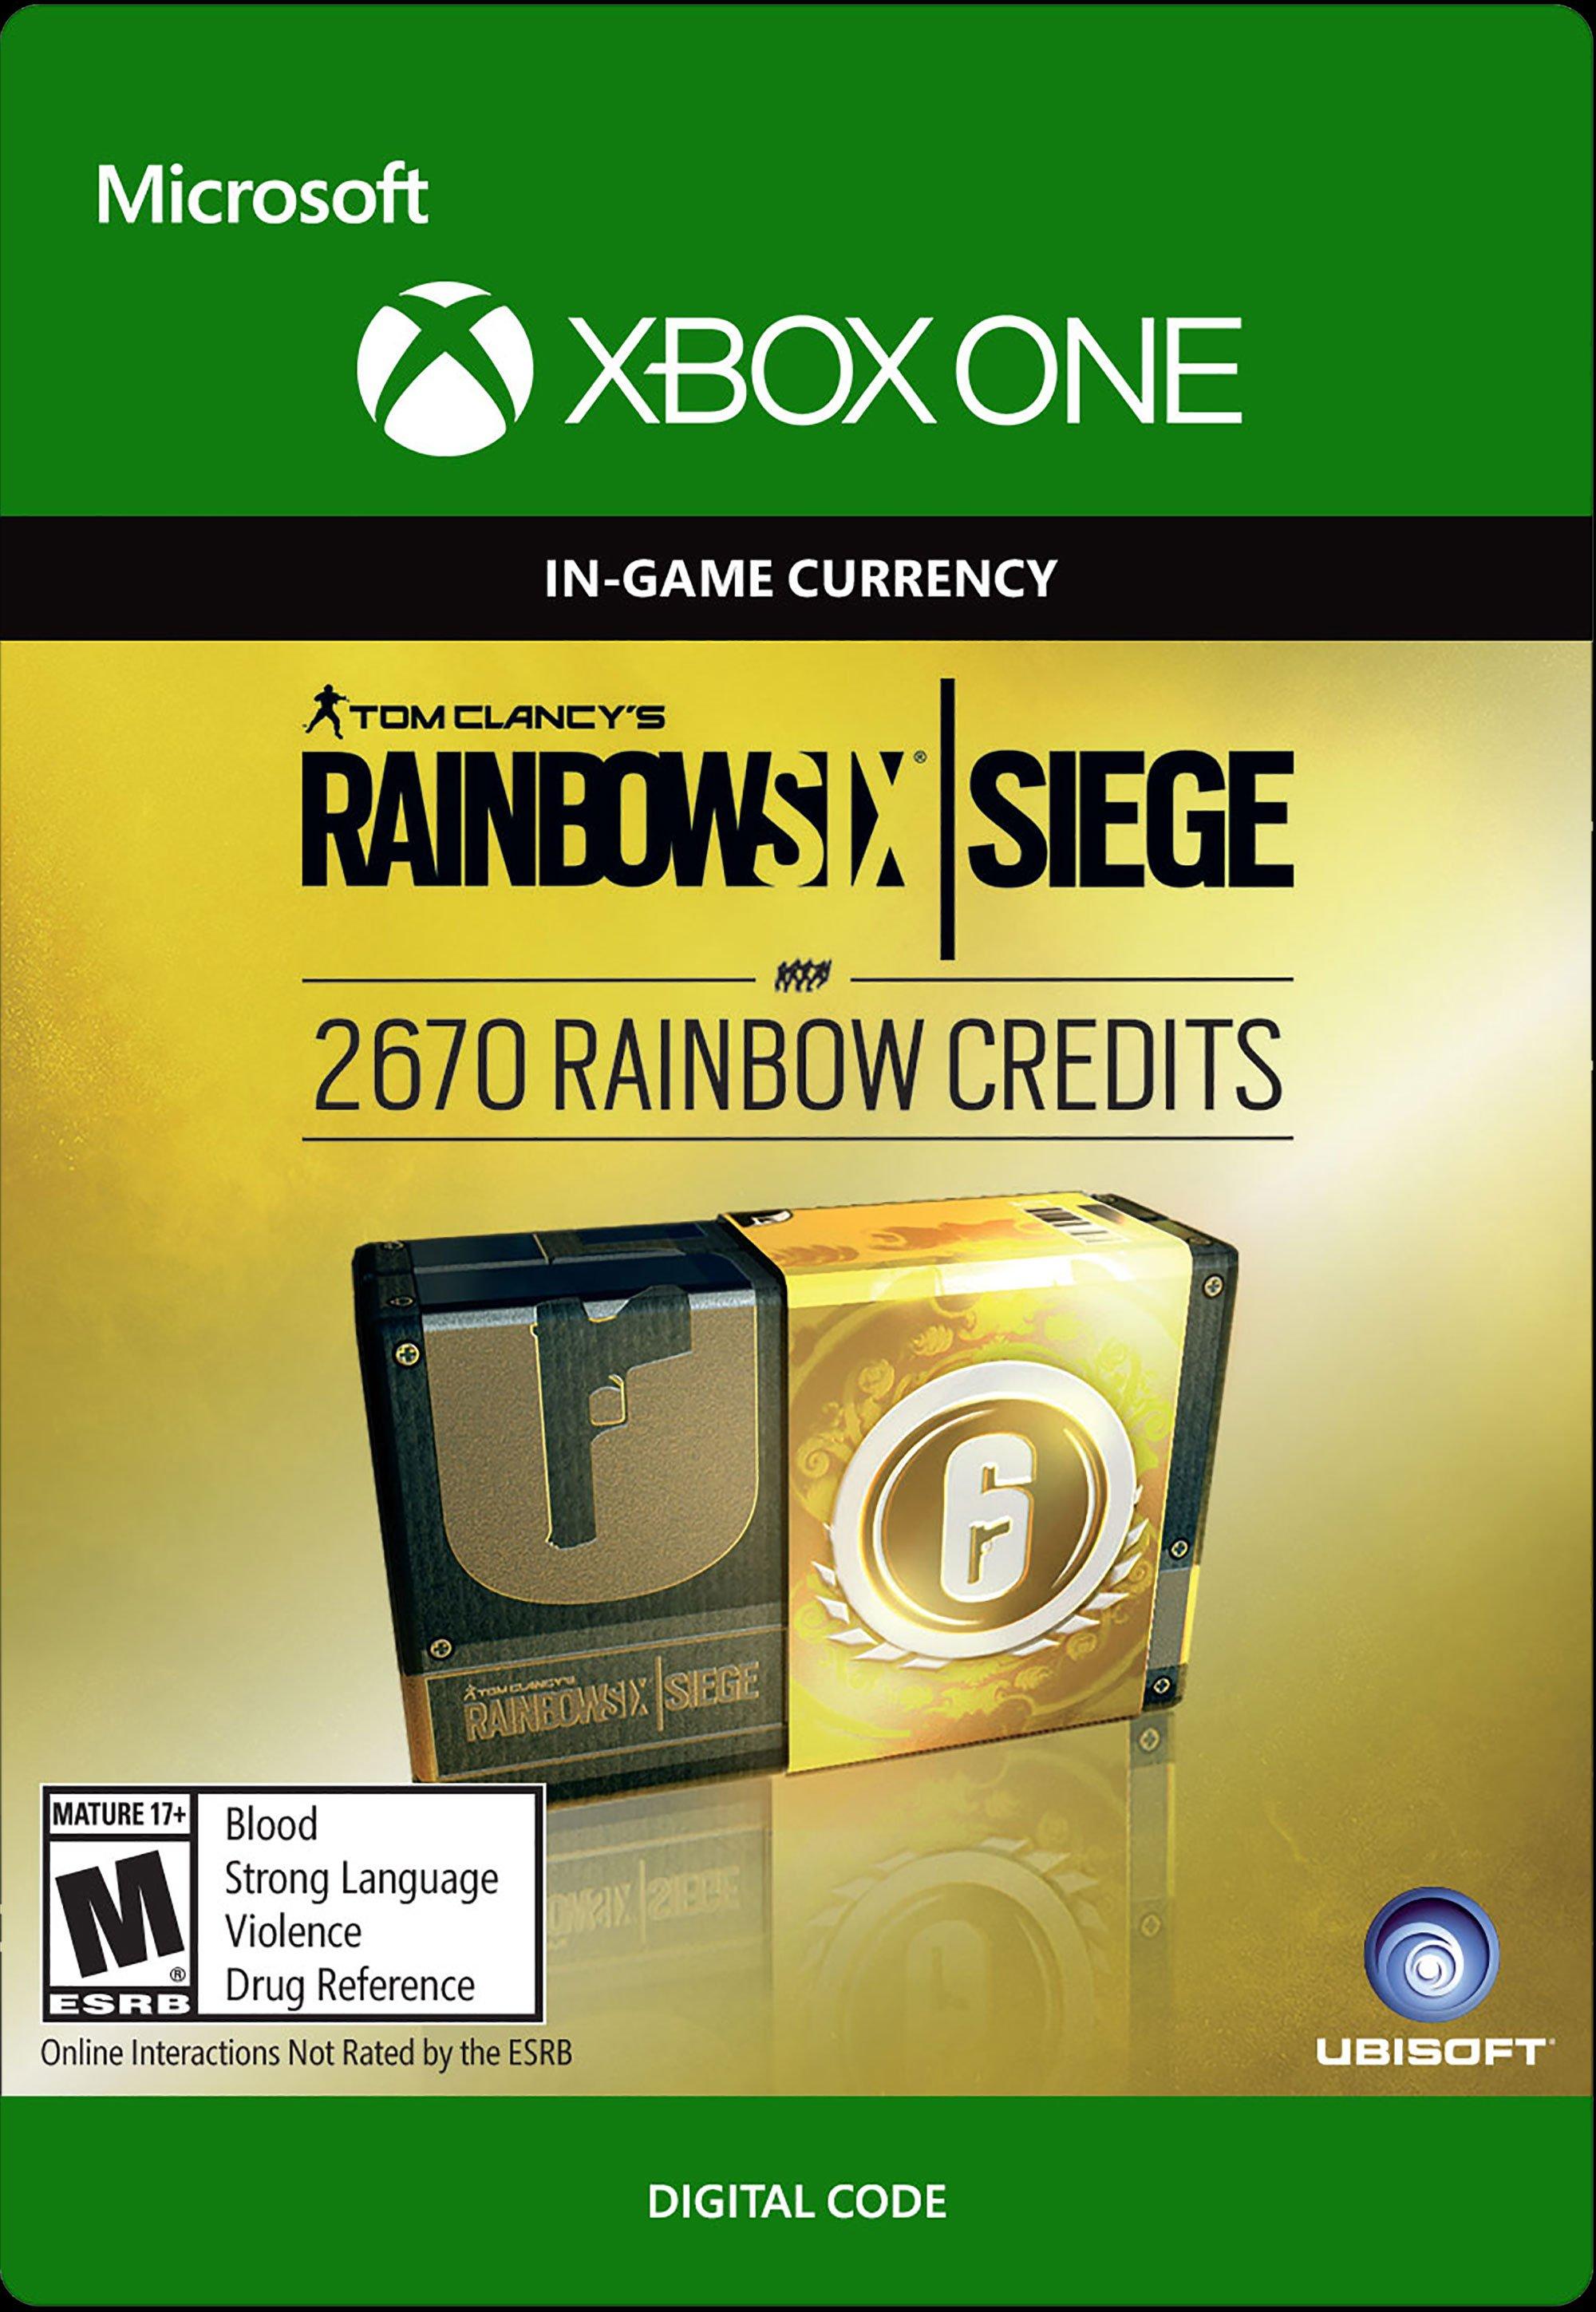 Tom Clancy's Rainbow Six: Siege Credits 2,670 - Xbox One